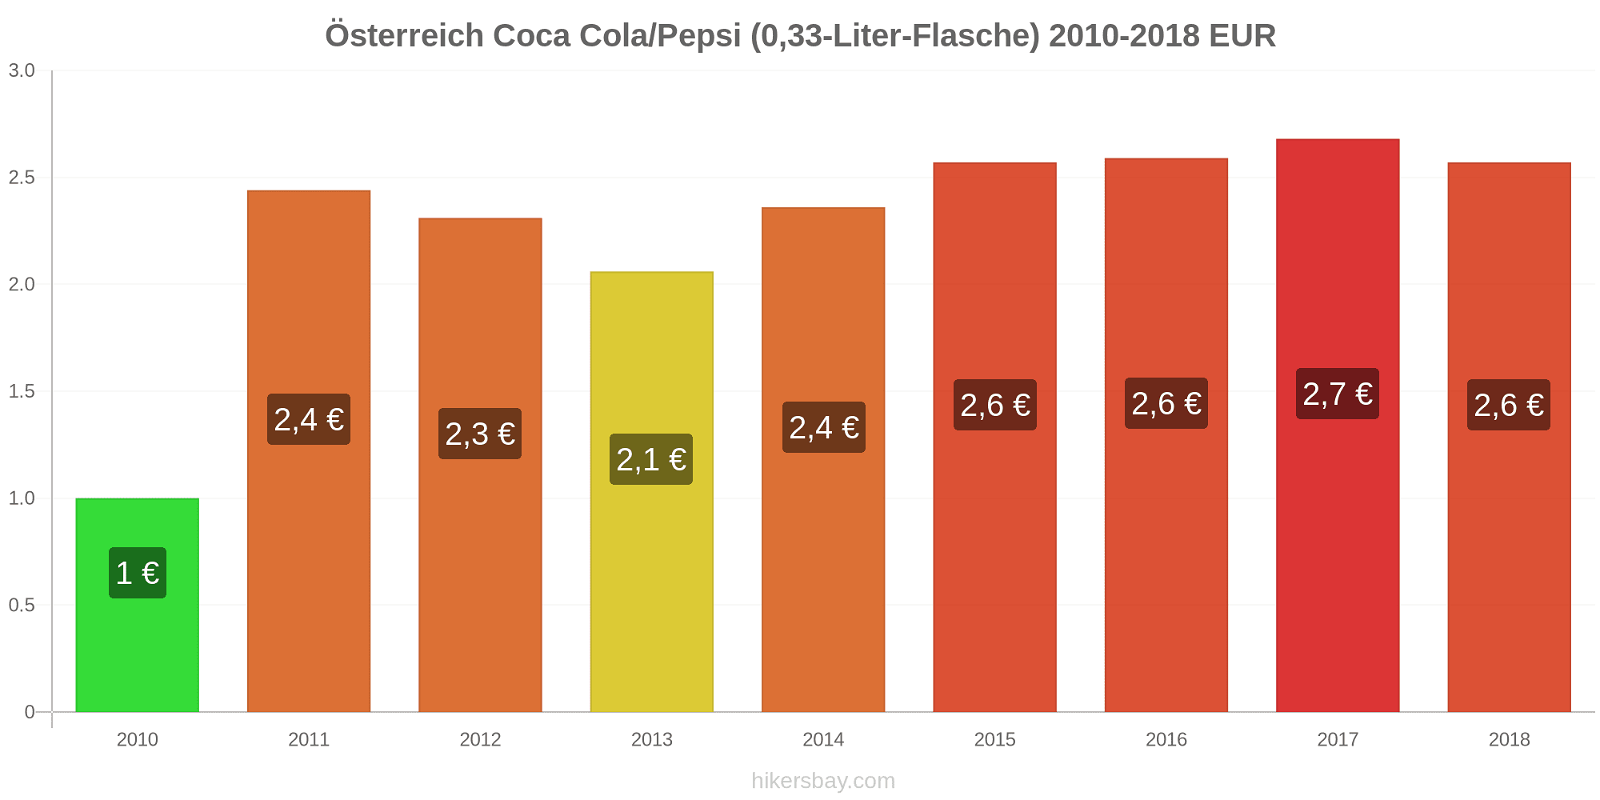 Österreich Preisänderungen Coke/Pepsi (0,33-Liter-Flasche) hikersbay.com